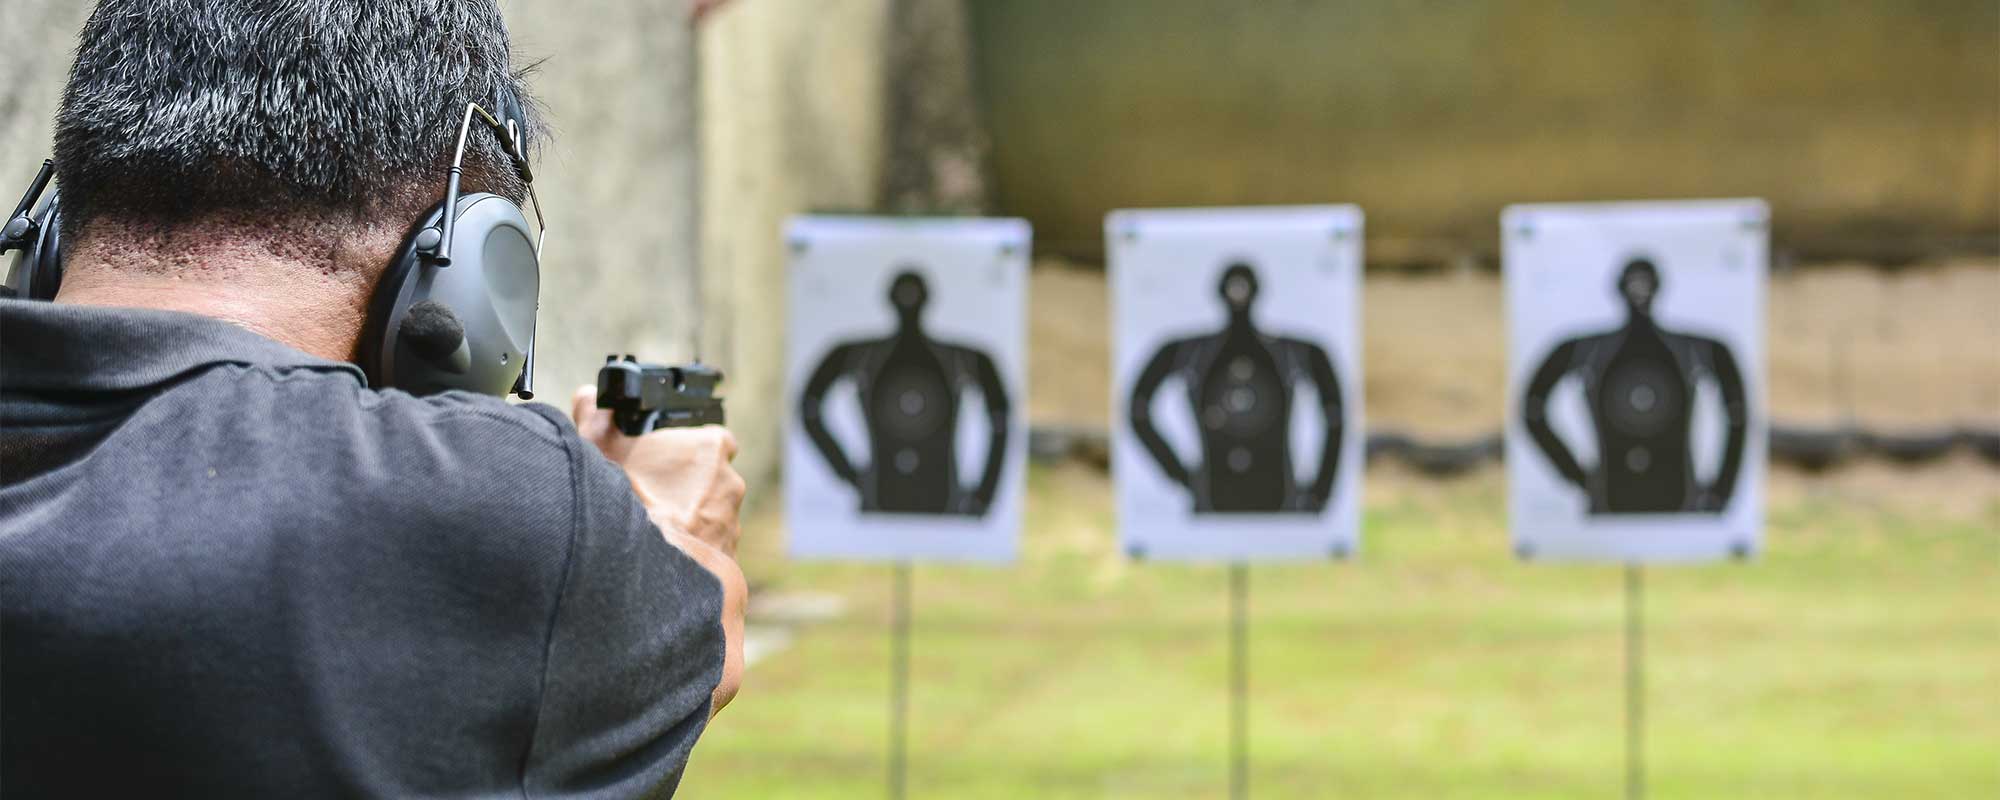 Man Shooting Targets